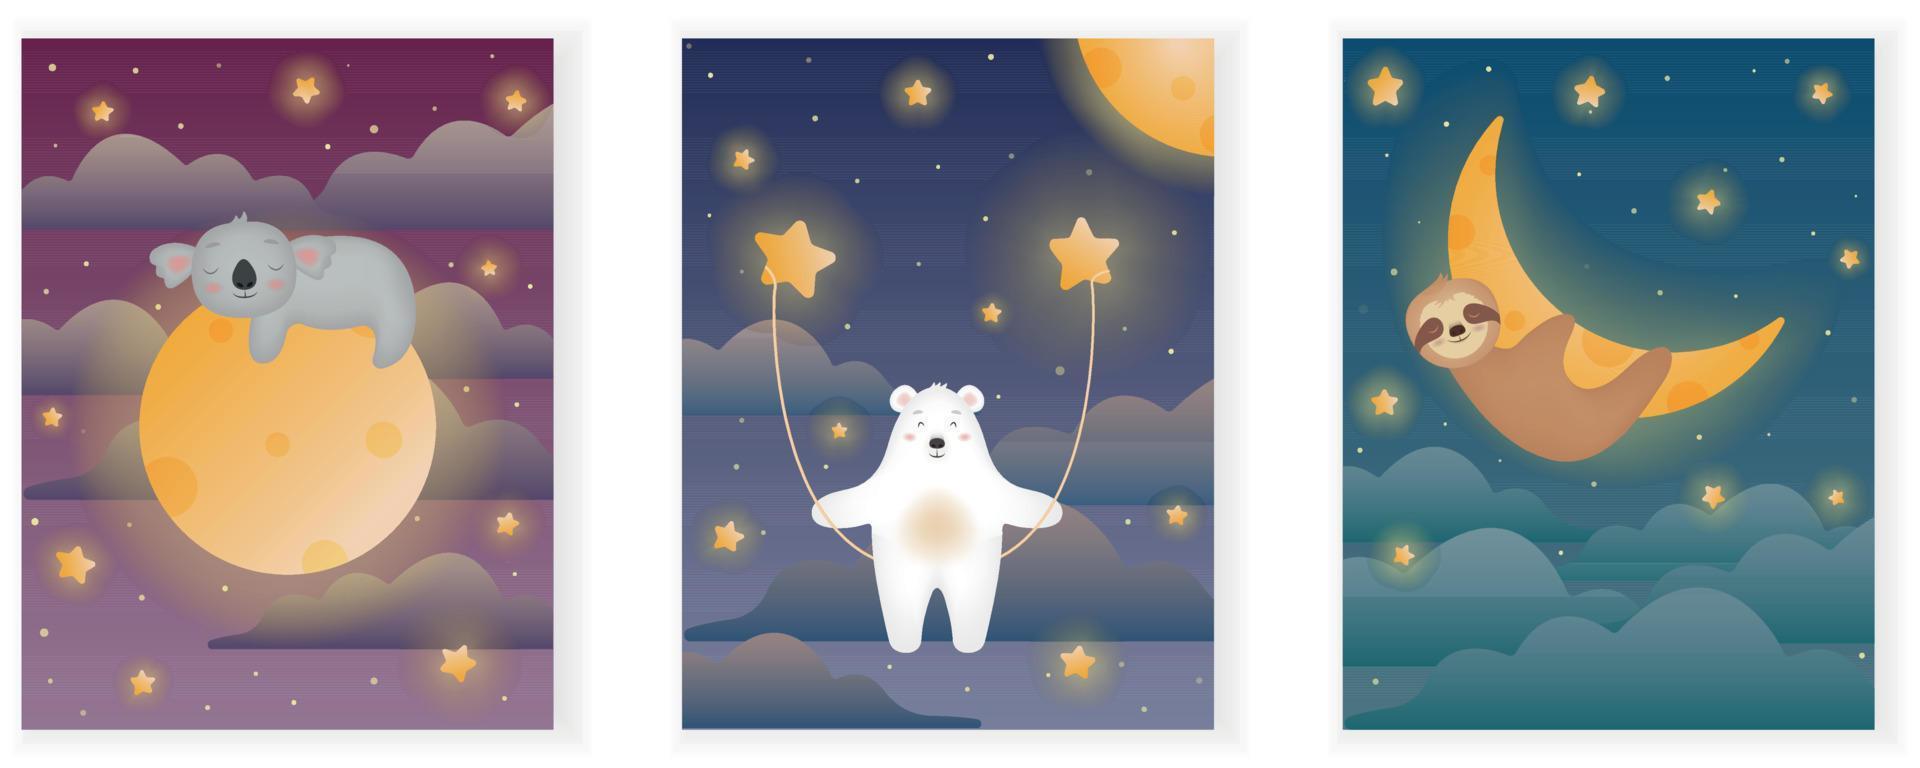 animali addormentati per bambini. magico cielo stellato con simpatici koala, orso e bradipo. spazio. set di illustrazione vettoriale